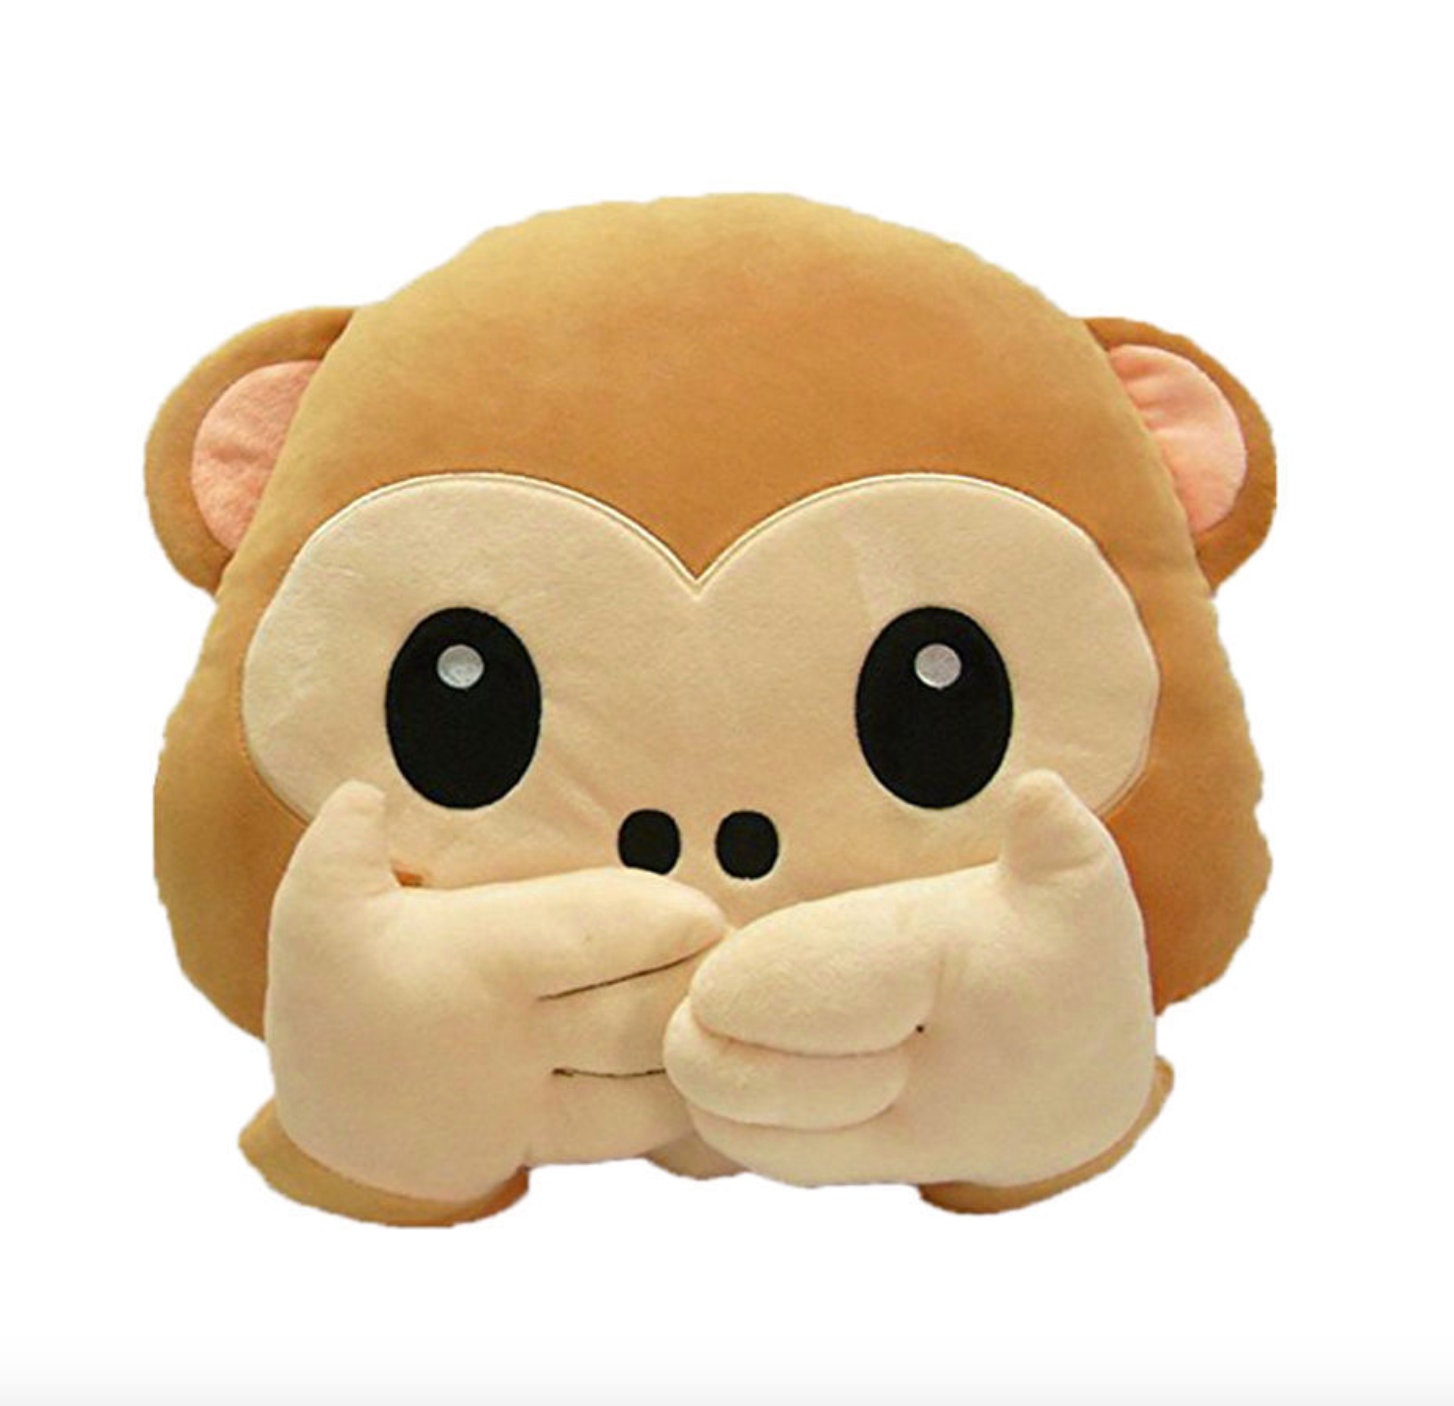 felpato a forma dell’emoticon della scimmietta ottimo anche come giocattolo 1# collectsound Cuscino grazioso e divertente 